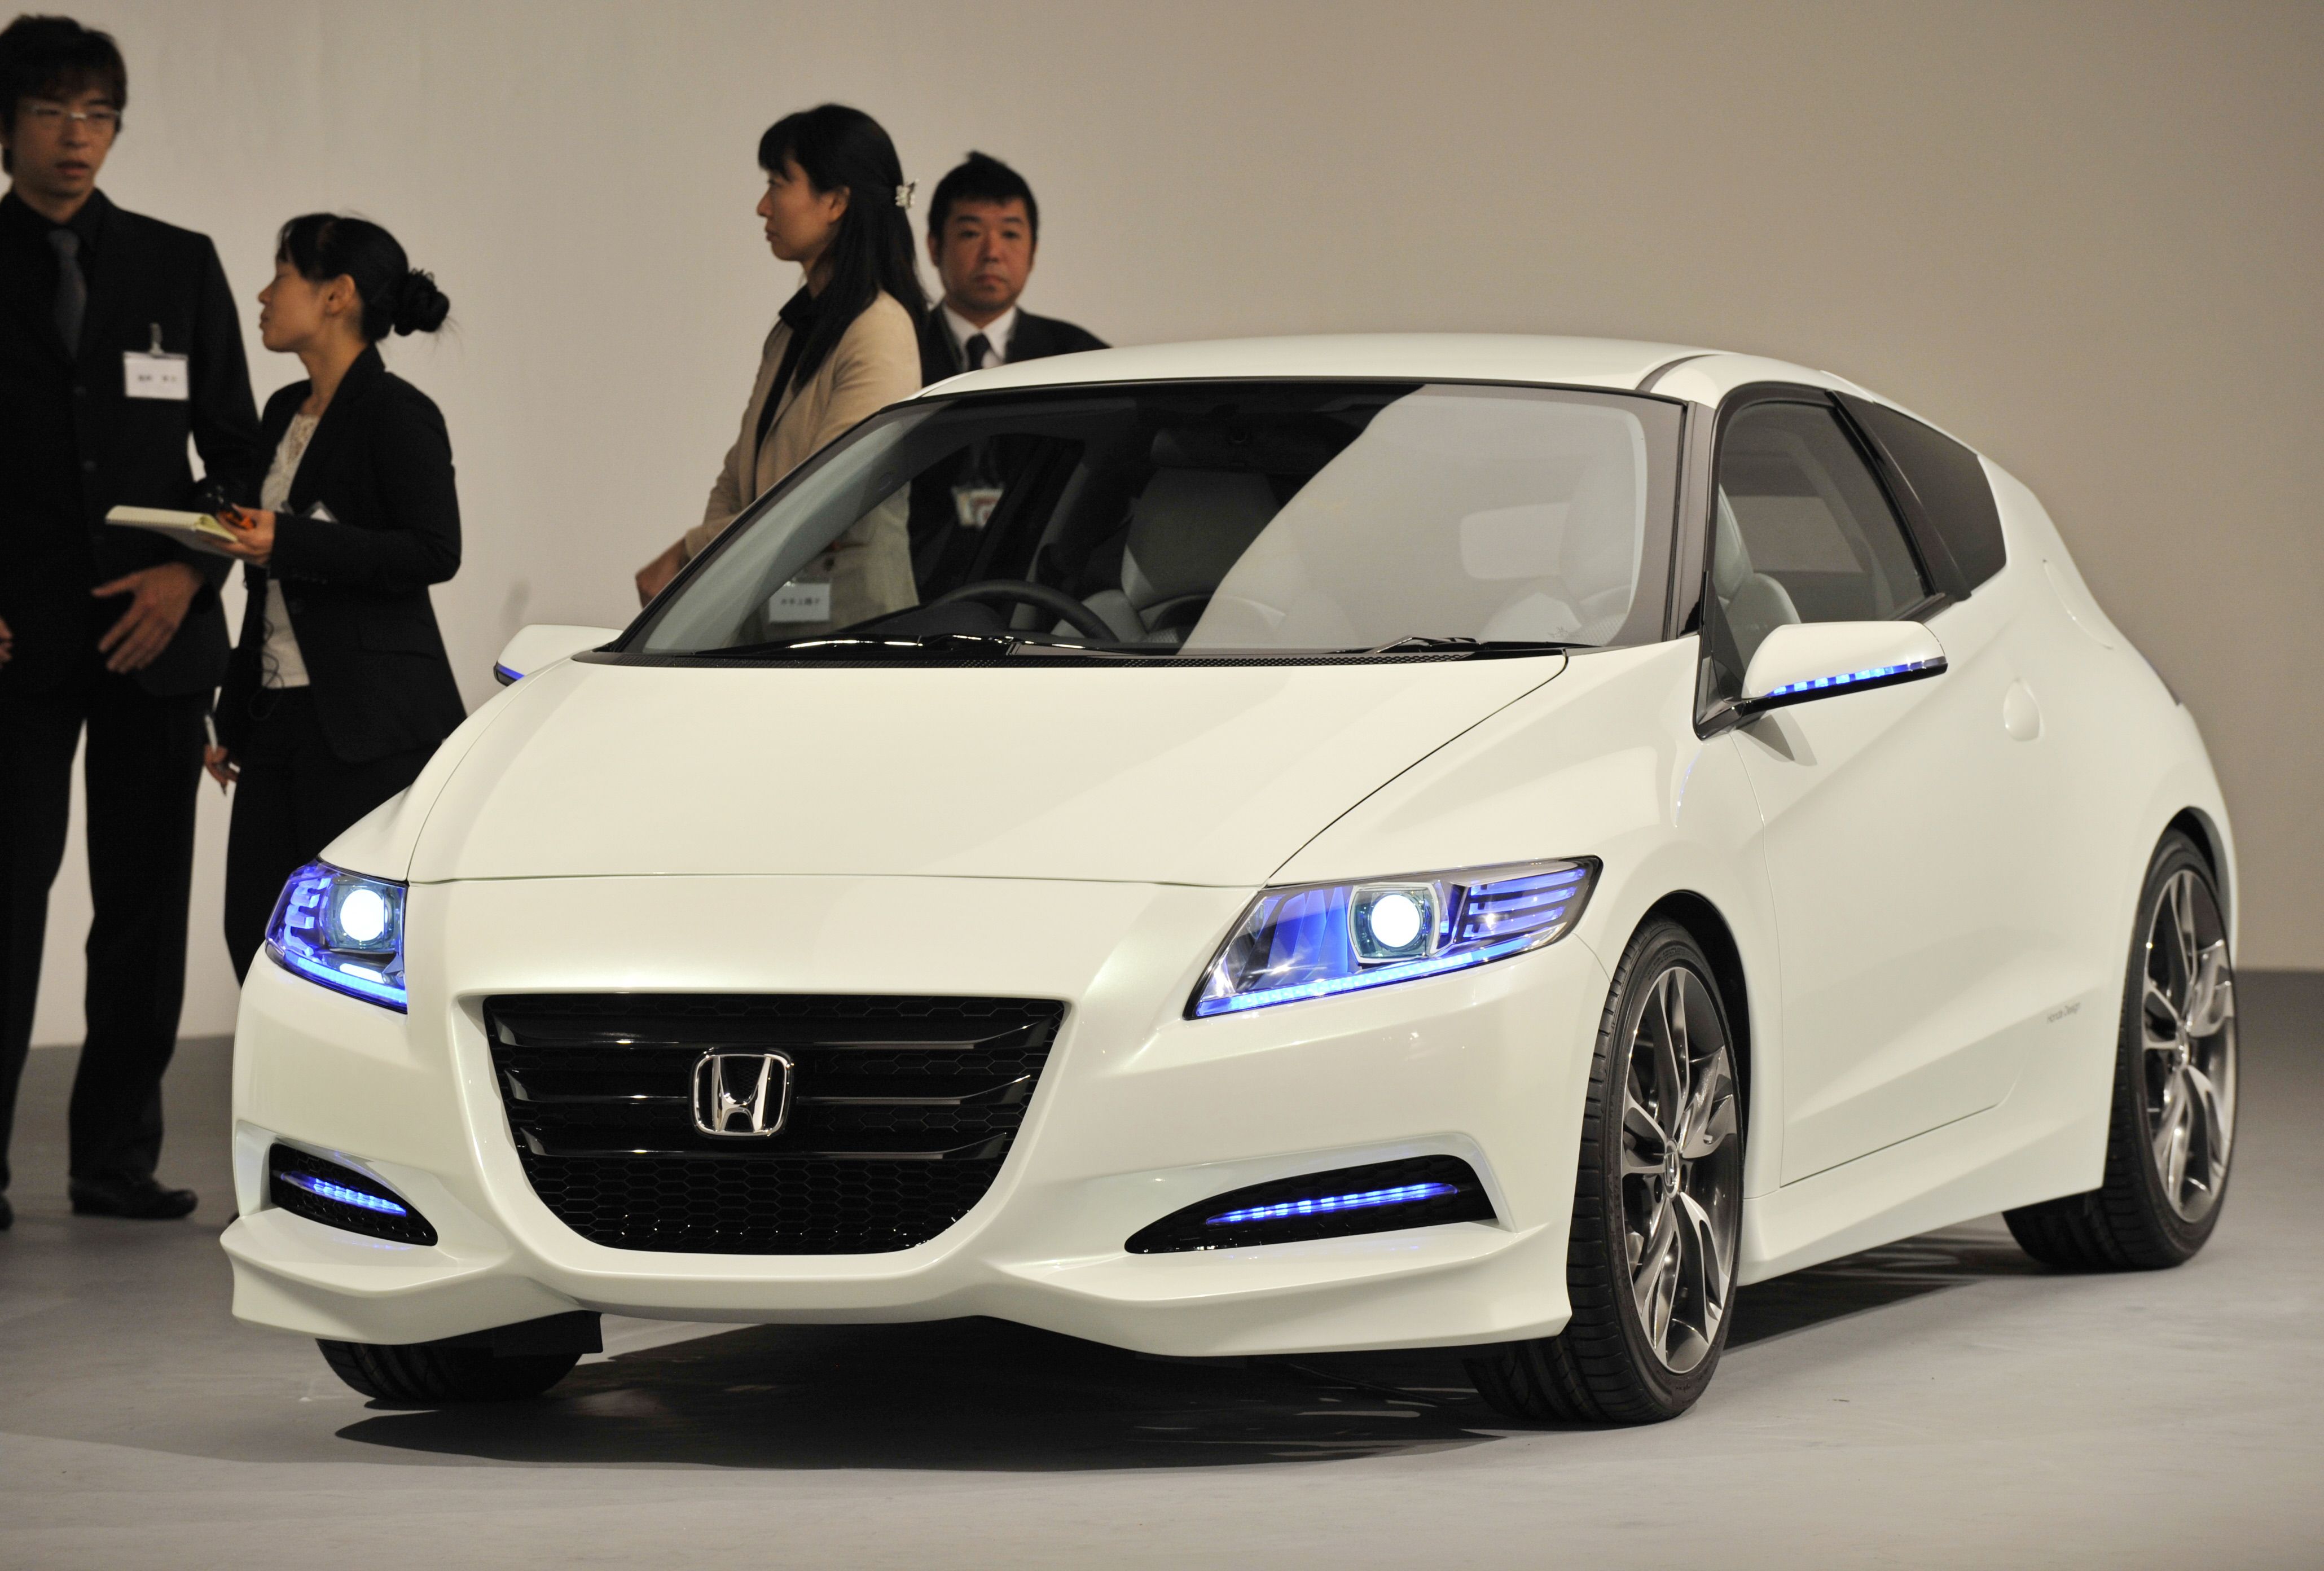 2012 Honda CRZ Hybrid Interior